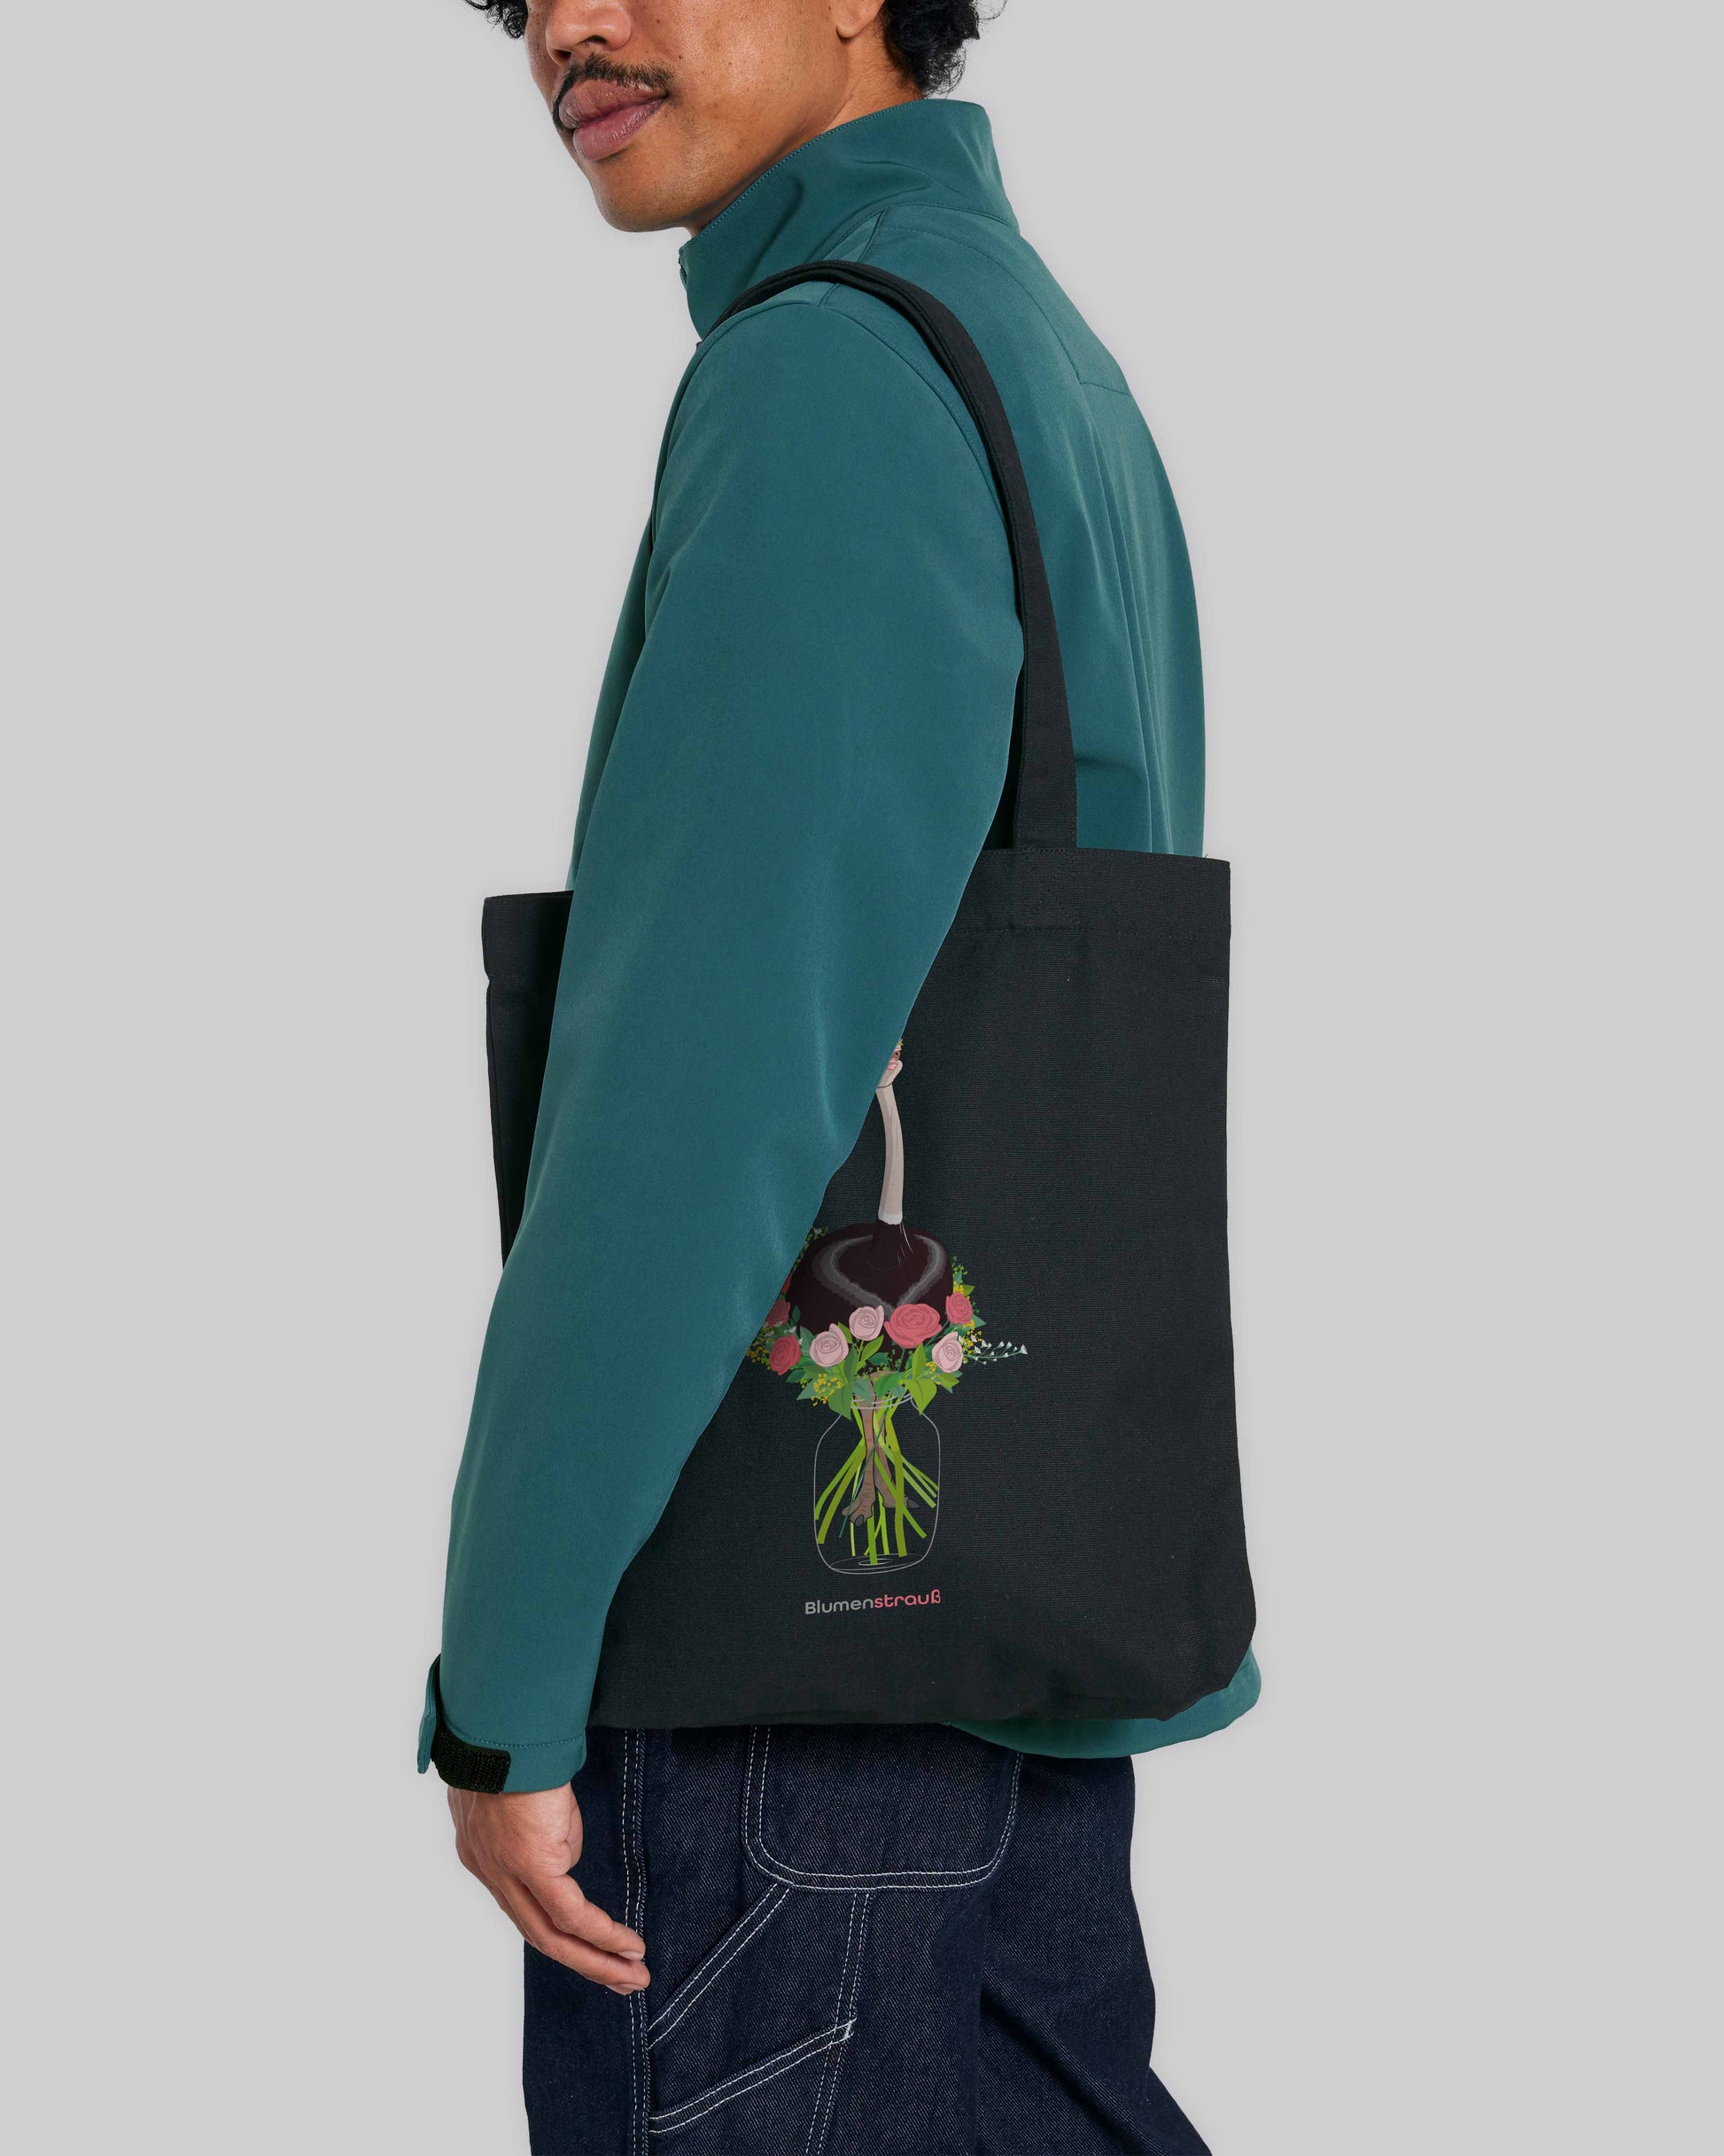 EINHORST® Stofftasche in Schwarz mit dem Motiv "Blumenstrauß", Bild von männlicher Person mit Stofftasche unter dem Arm